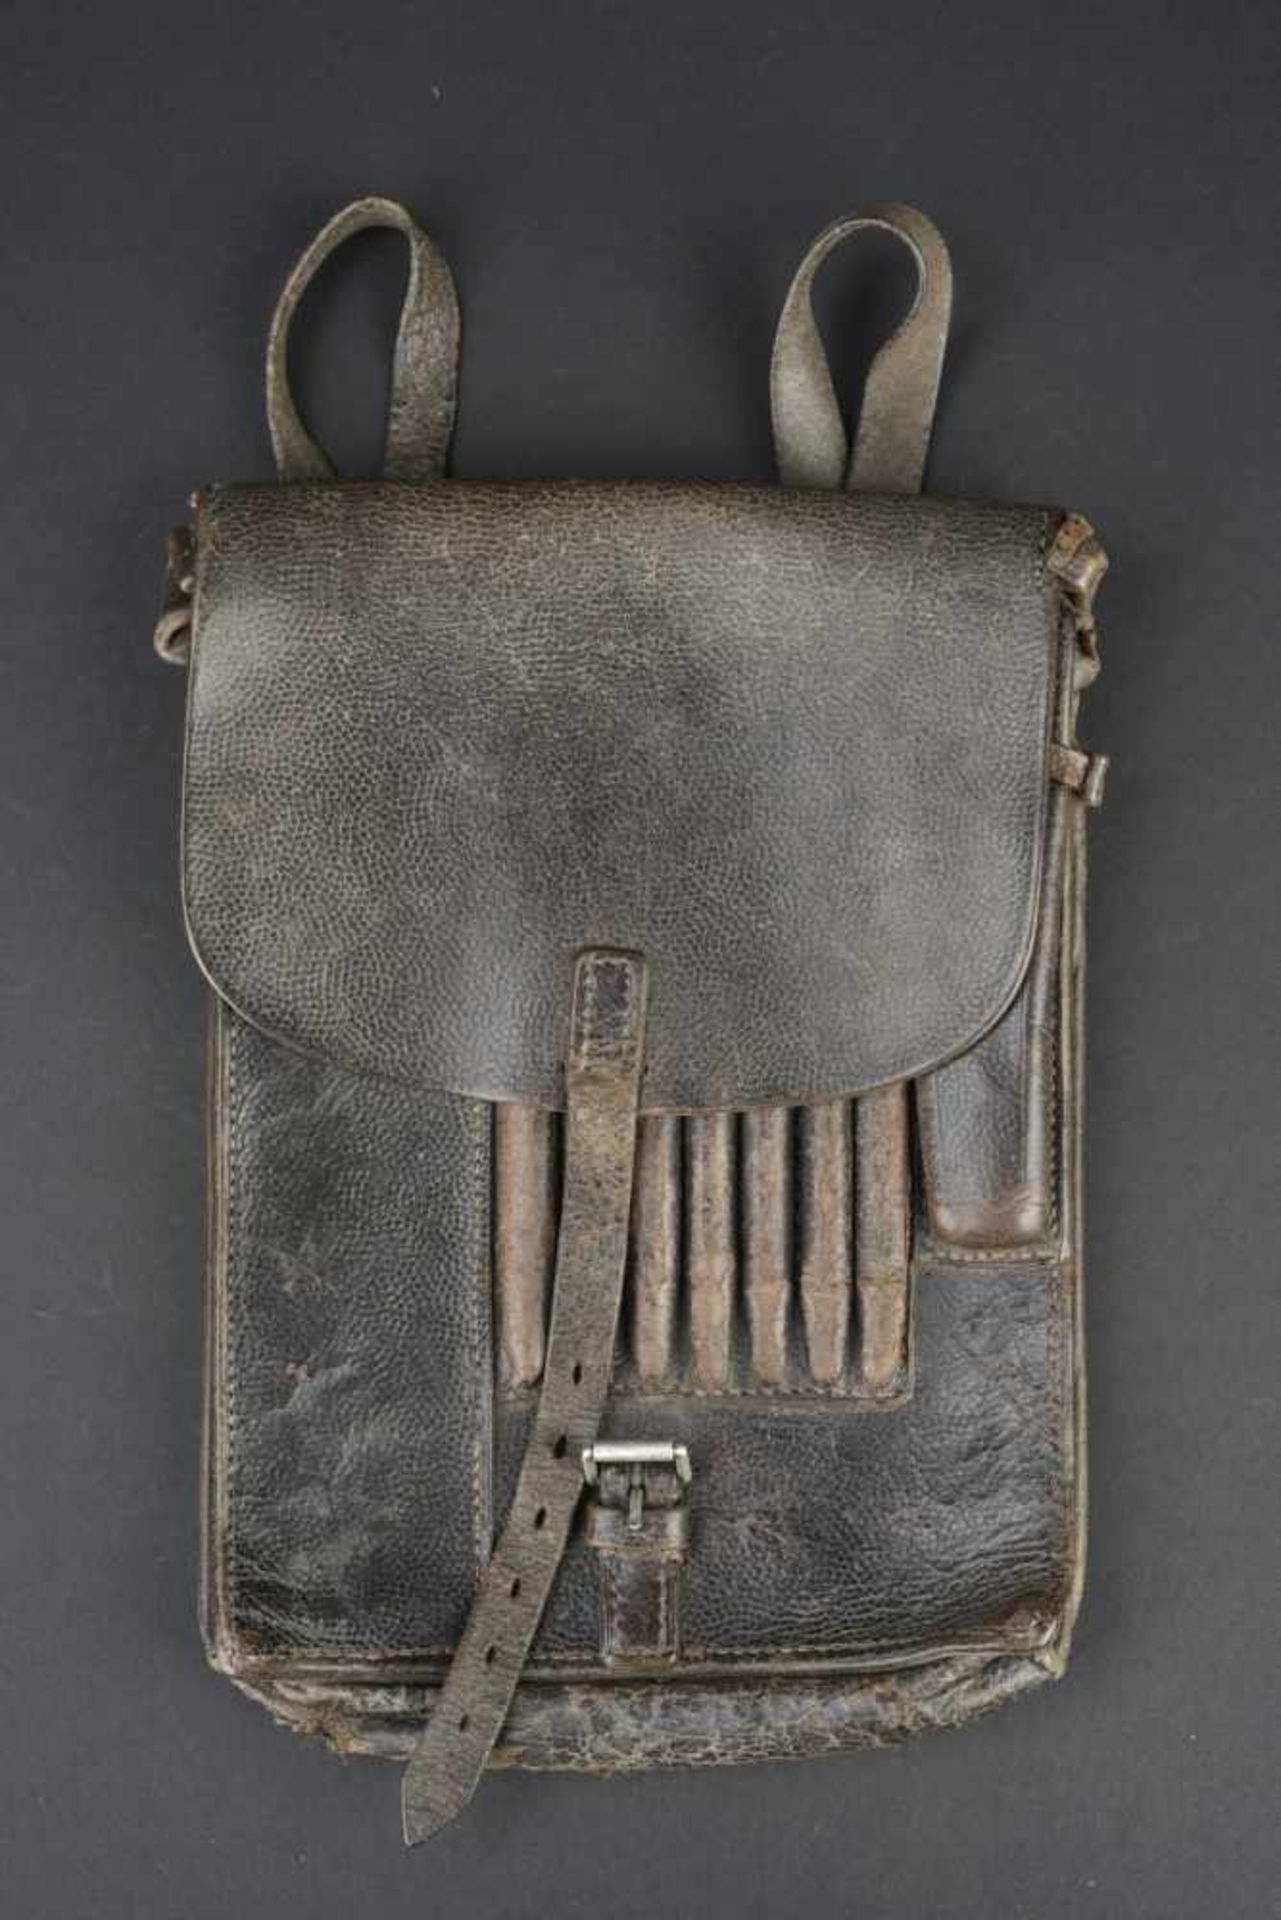 Porte carte de la Heer En cuir noir, complet. Marquages fabricant présent mais illisible, daté 1939.